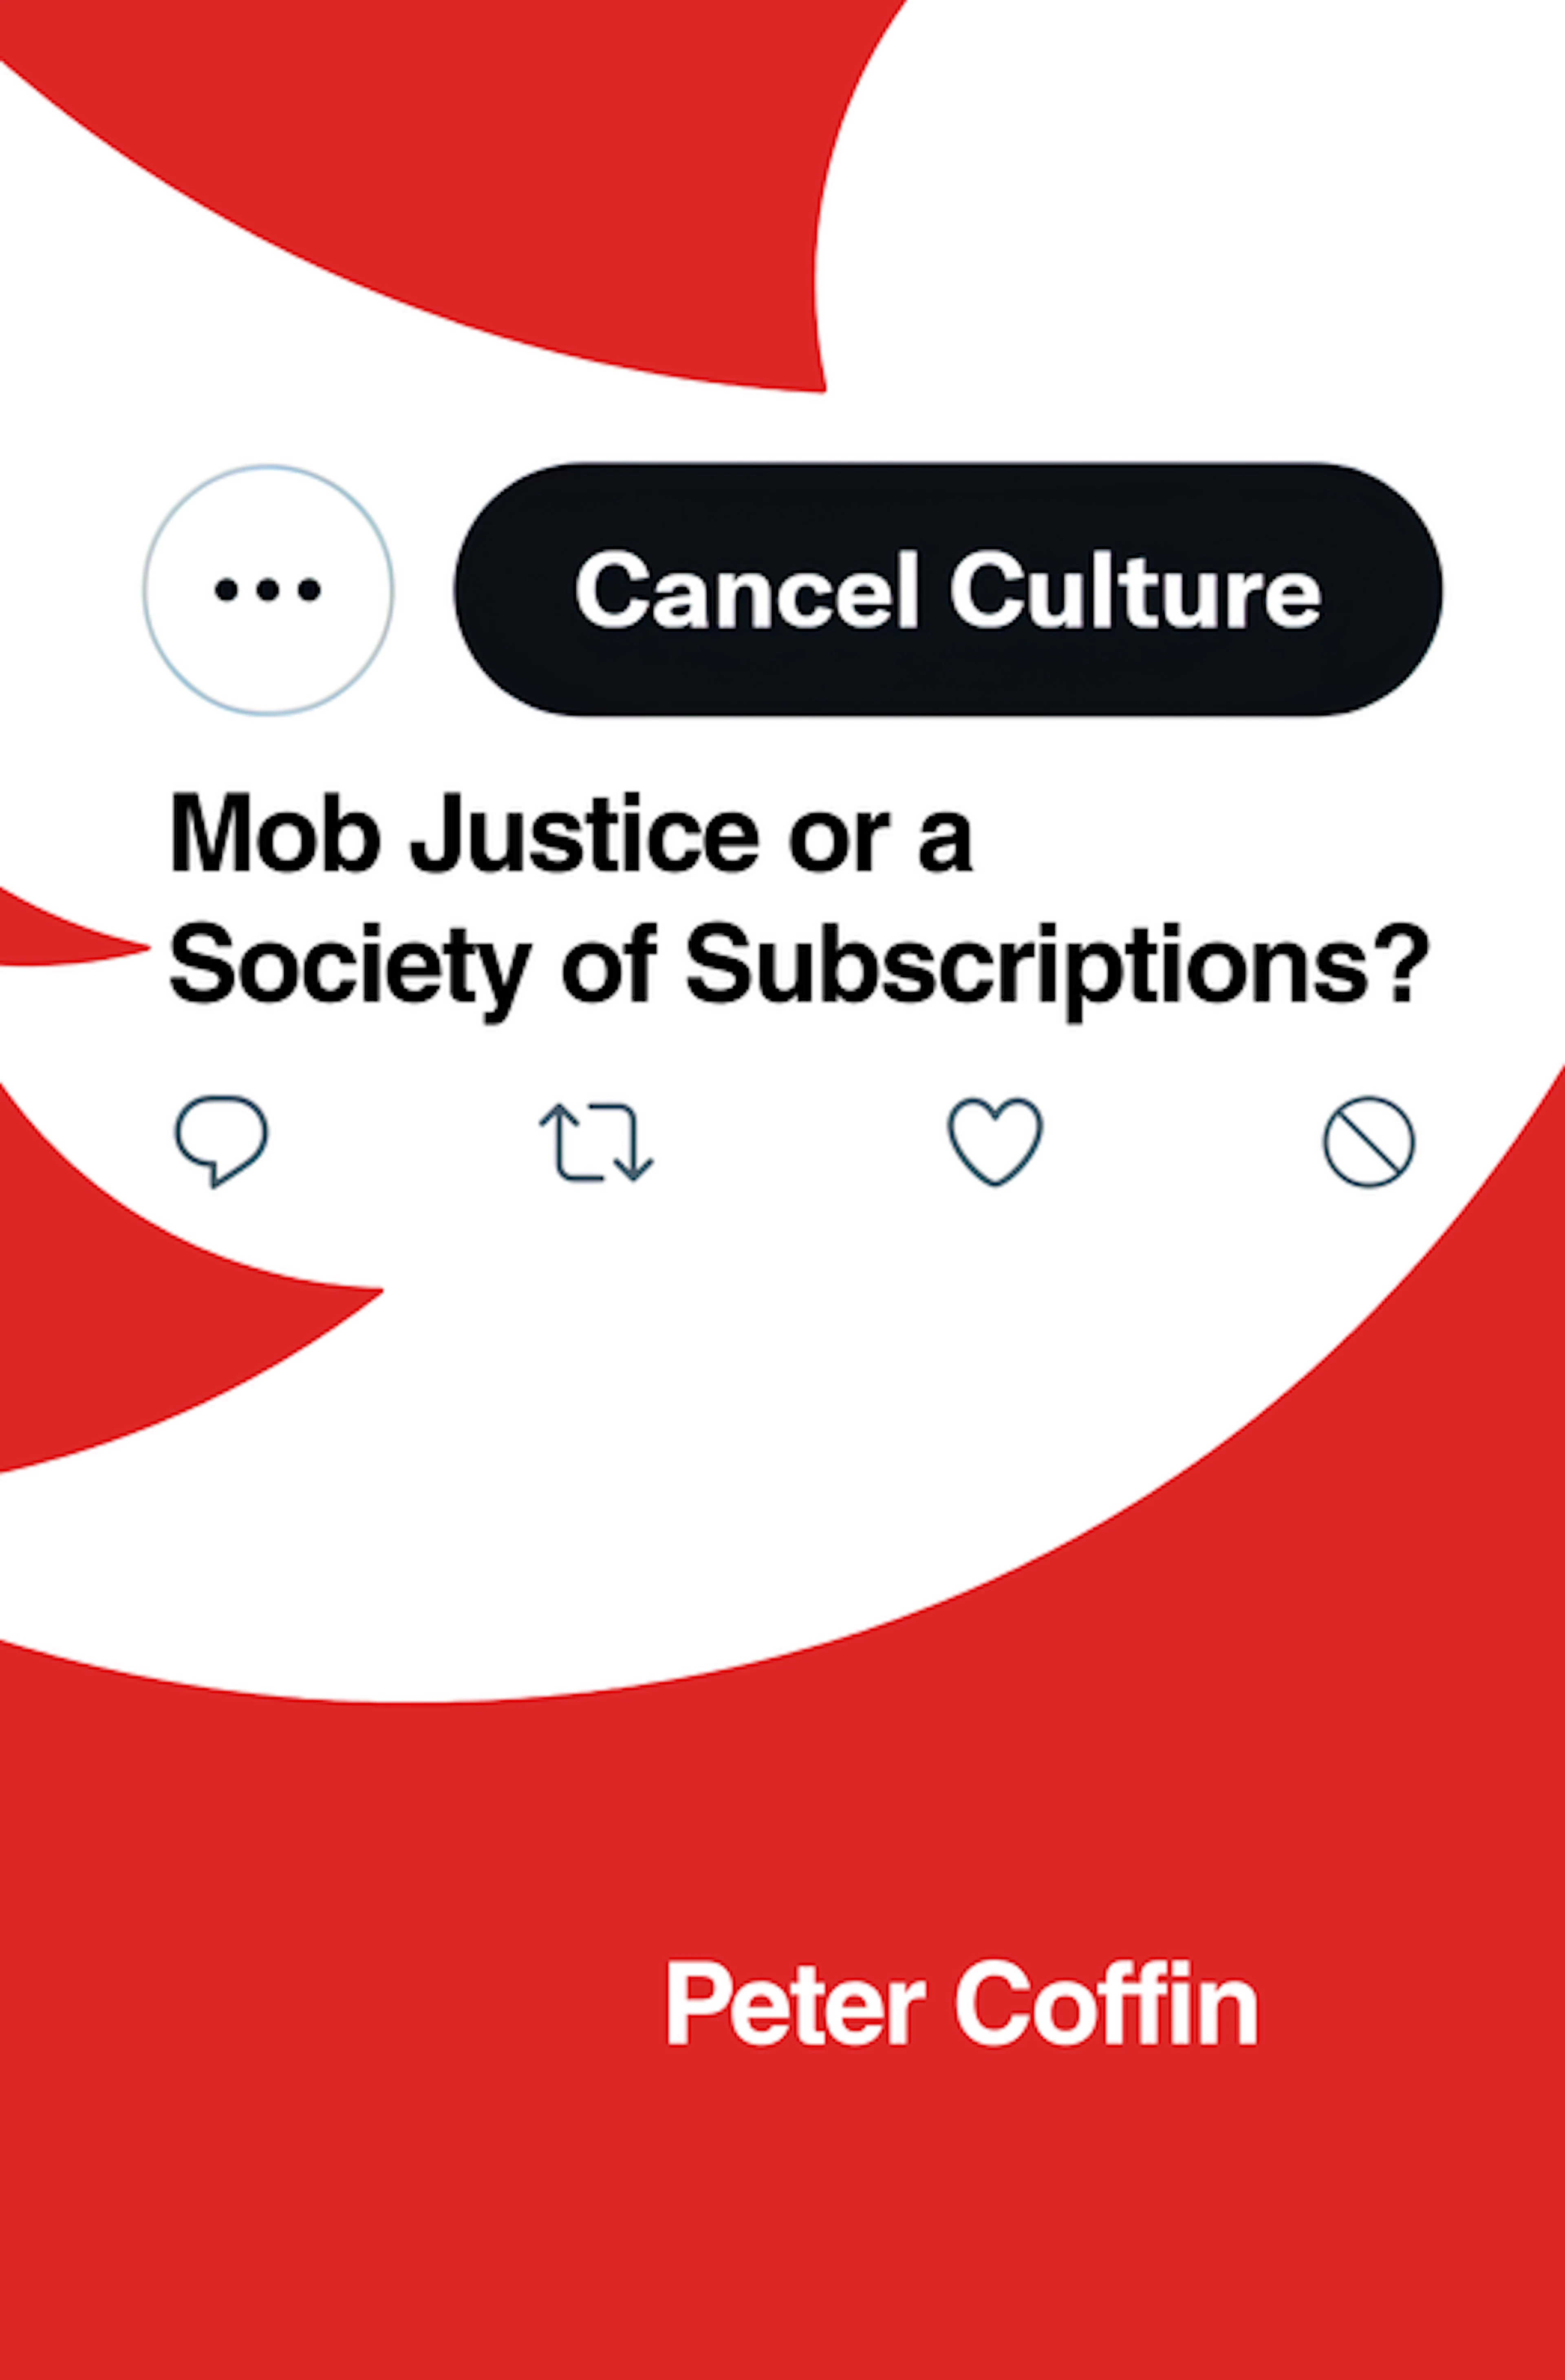 Cancel Culture (Book)